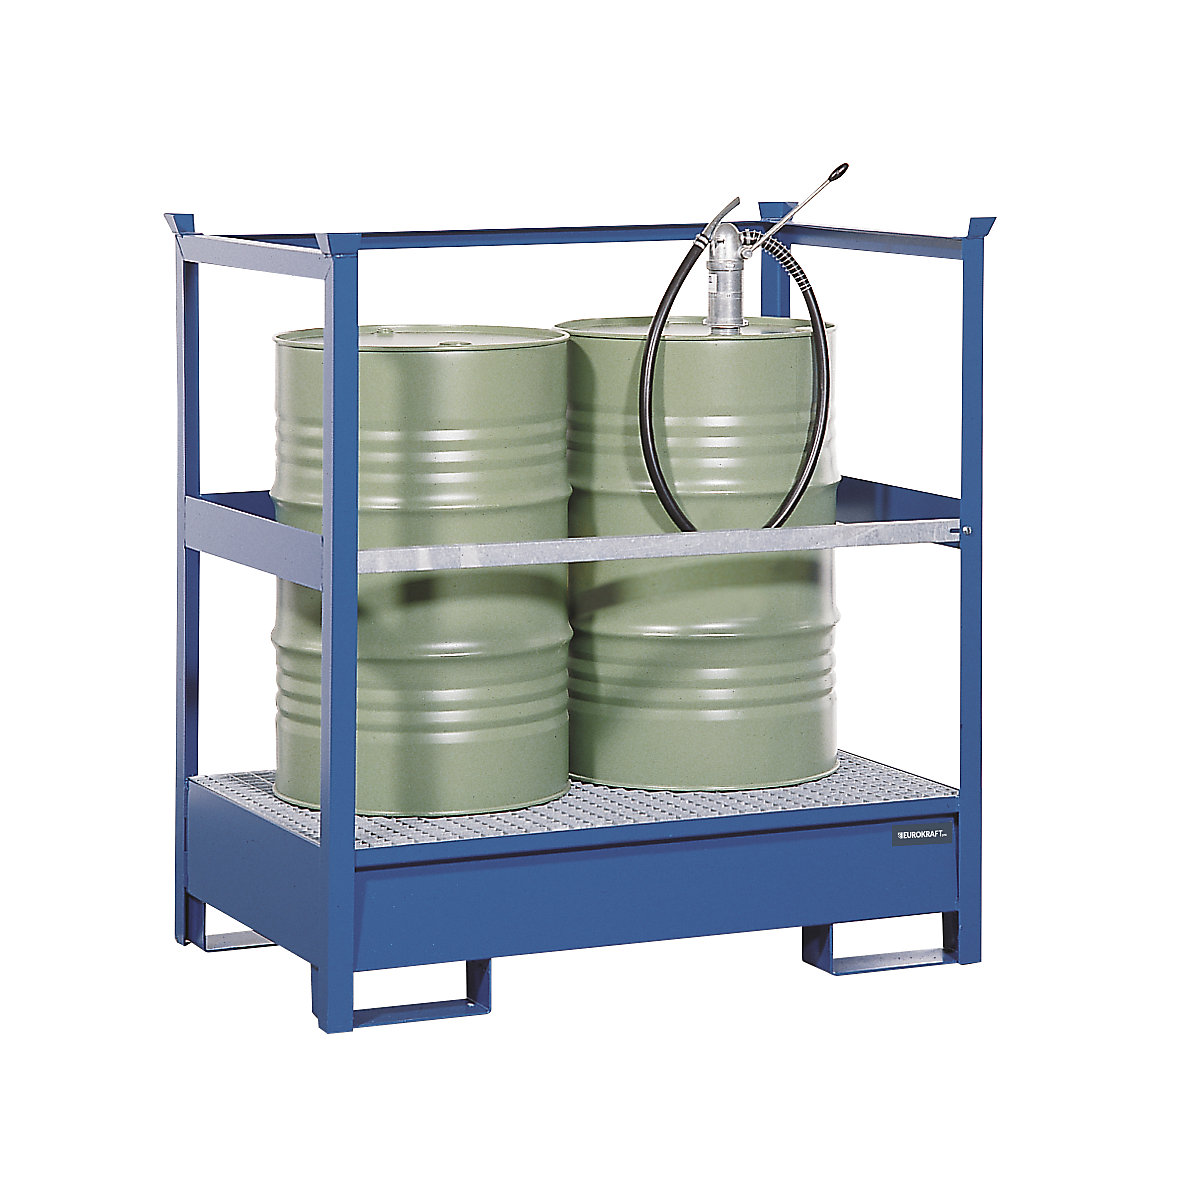 EUROKRAFTpro Fass-Auffangwanne für Transport und Lagerung, Rücken- und Seiten-Stahlrahmen offen, nicht stapelbar, für 2 Fässer, blau